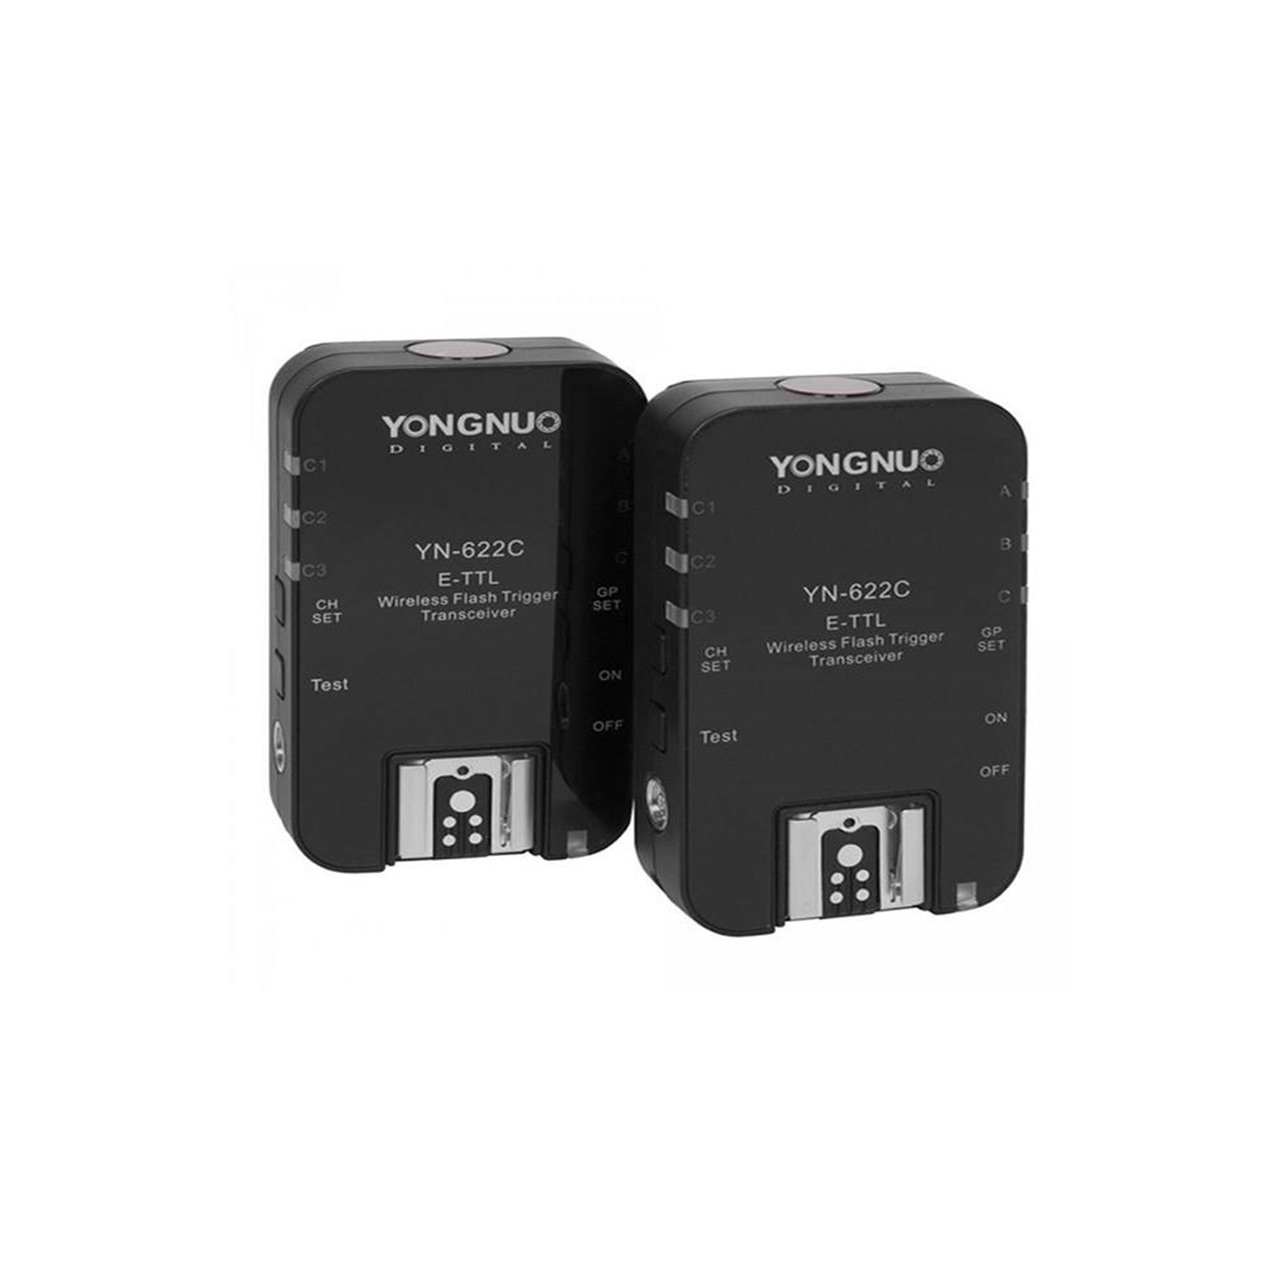 تریگر فلاش وایرلس یونگنو مدل YN-622C E-TTL مناسب برای دوربین های کانن